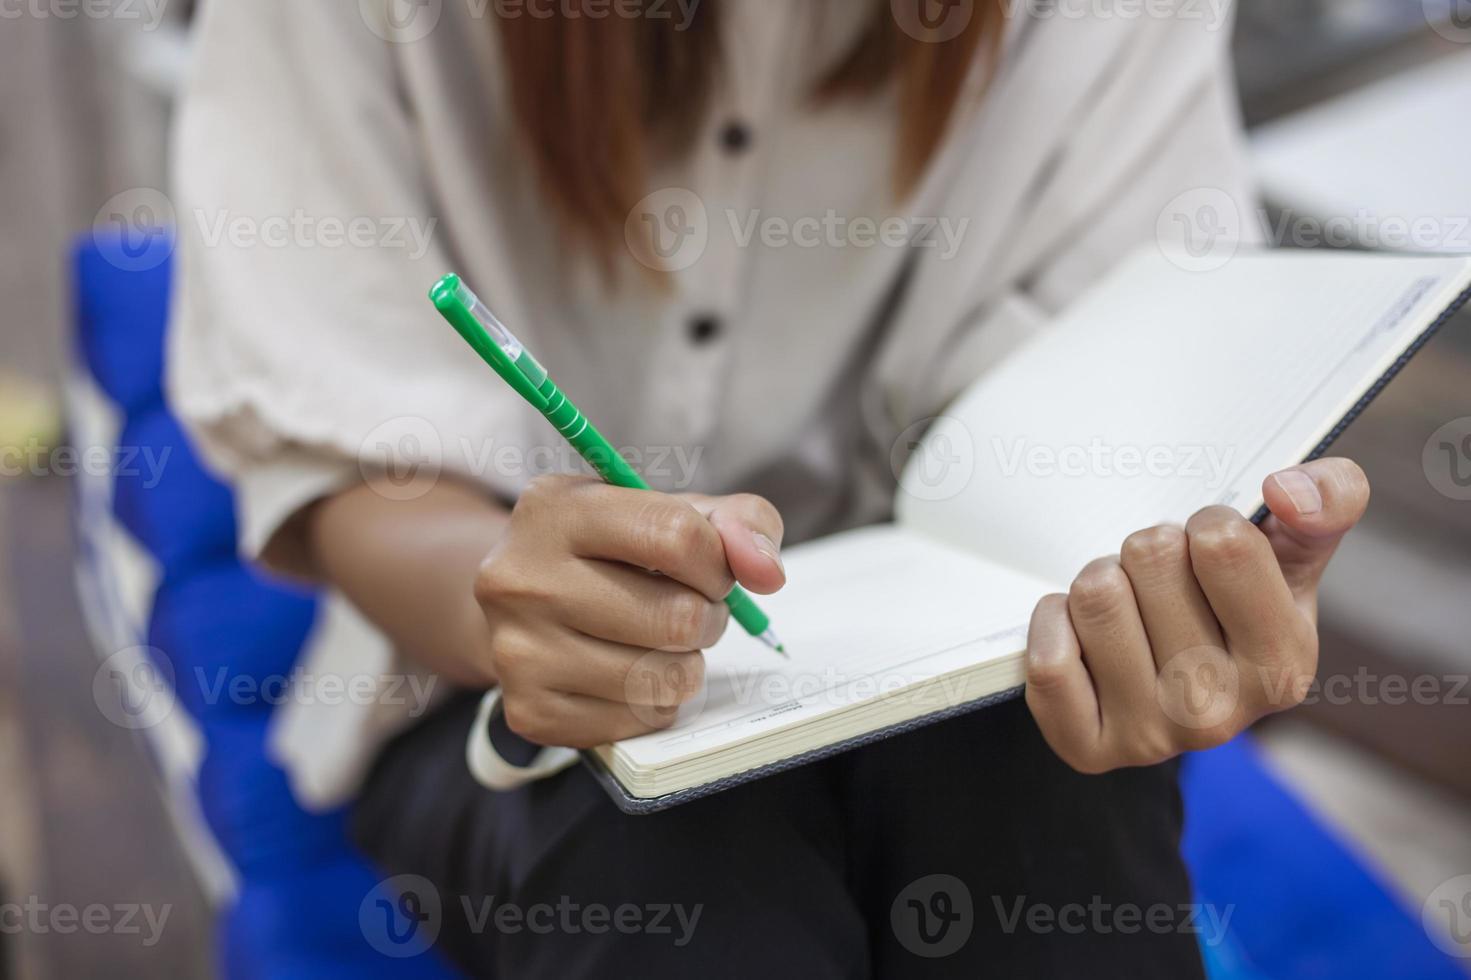 de flickans hand innehav en penna är skrivning ner något på en anteckningsbok. foto